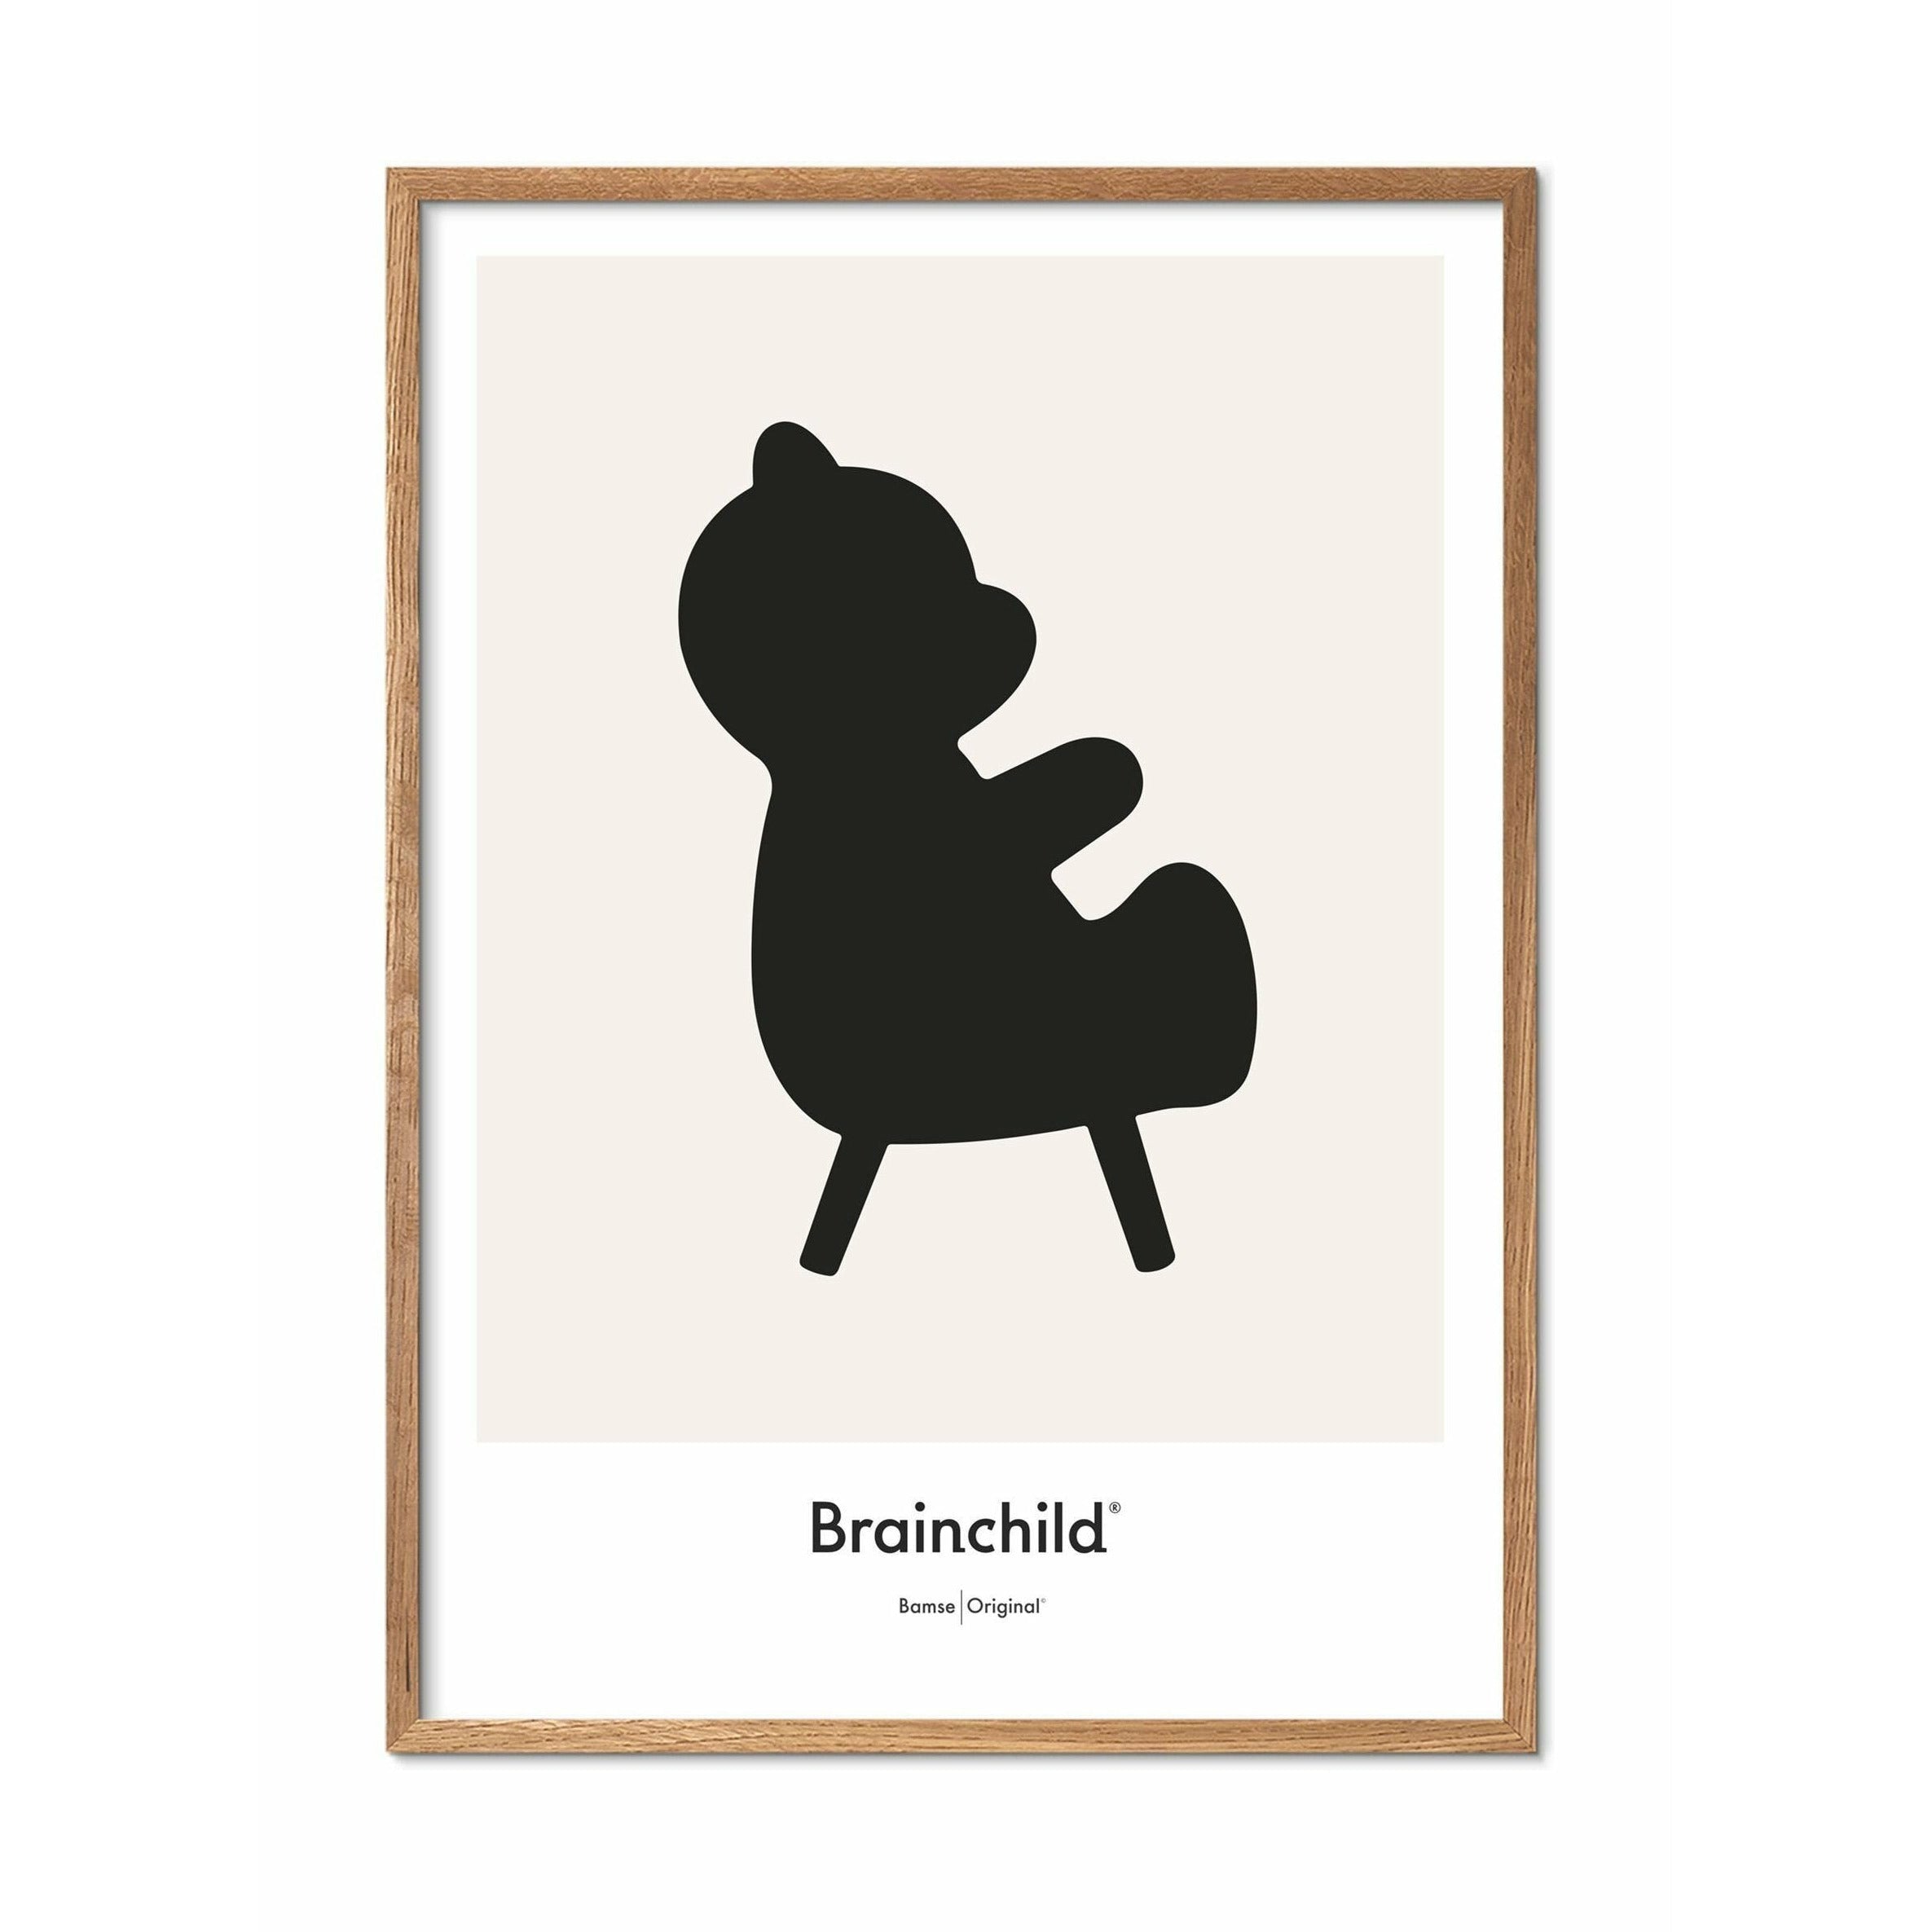 Brainchild Teddy Bear Design -kuvakejuliste, kehys, joka on valmistettu kevyestä puusta 30x40 cm, harmaa